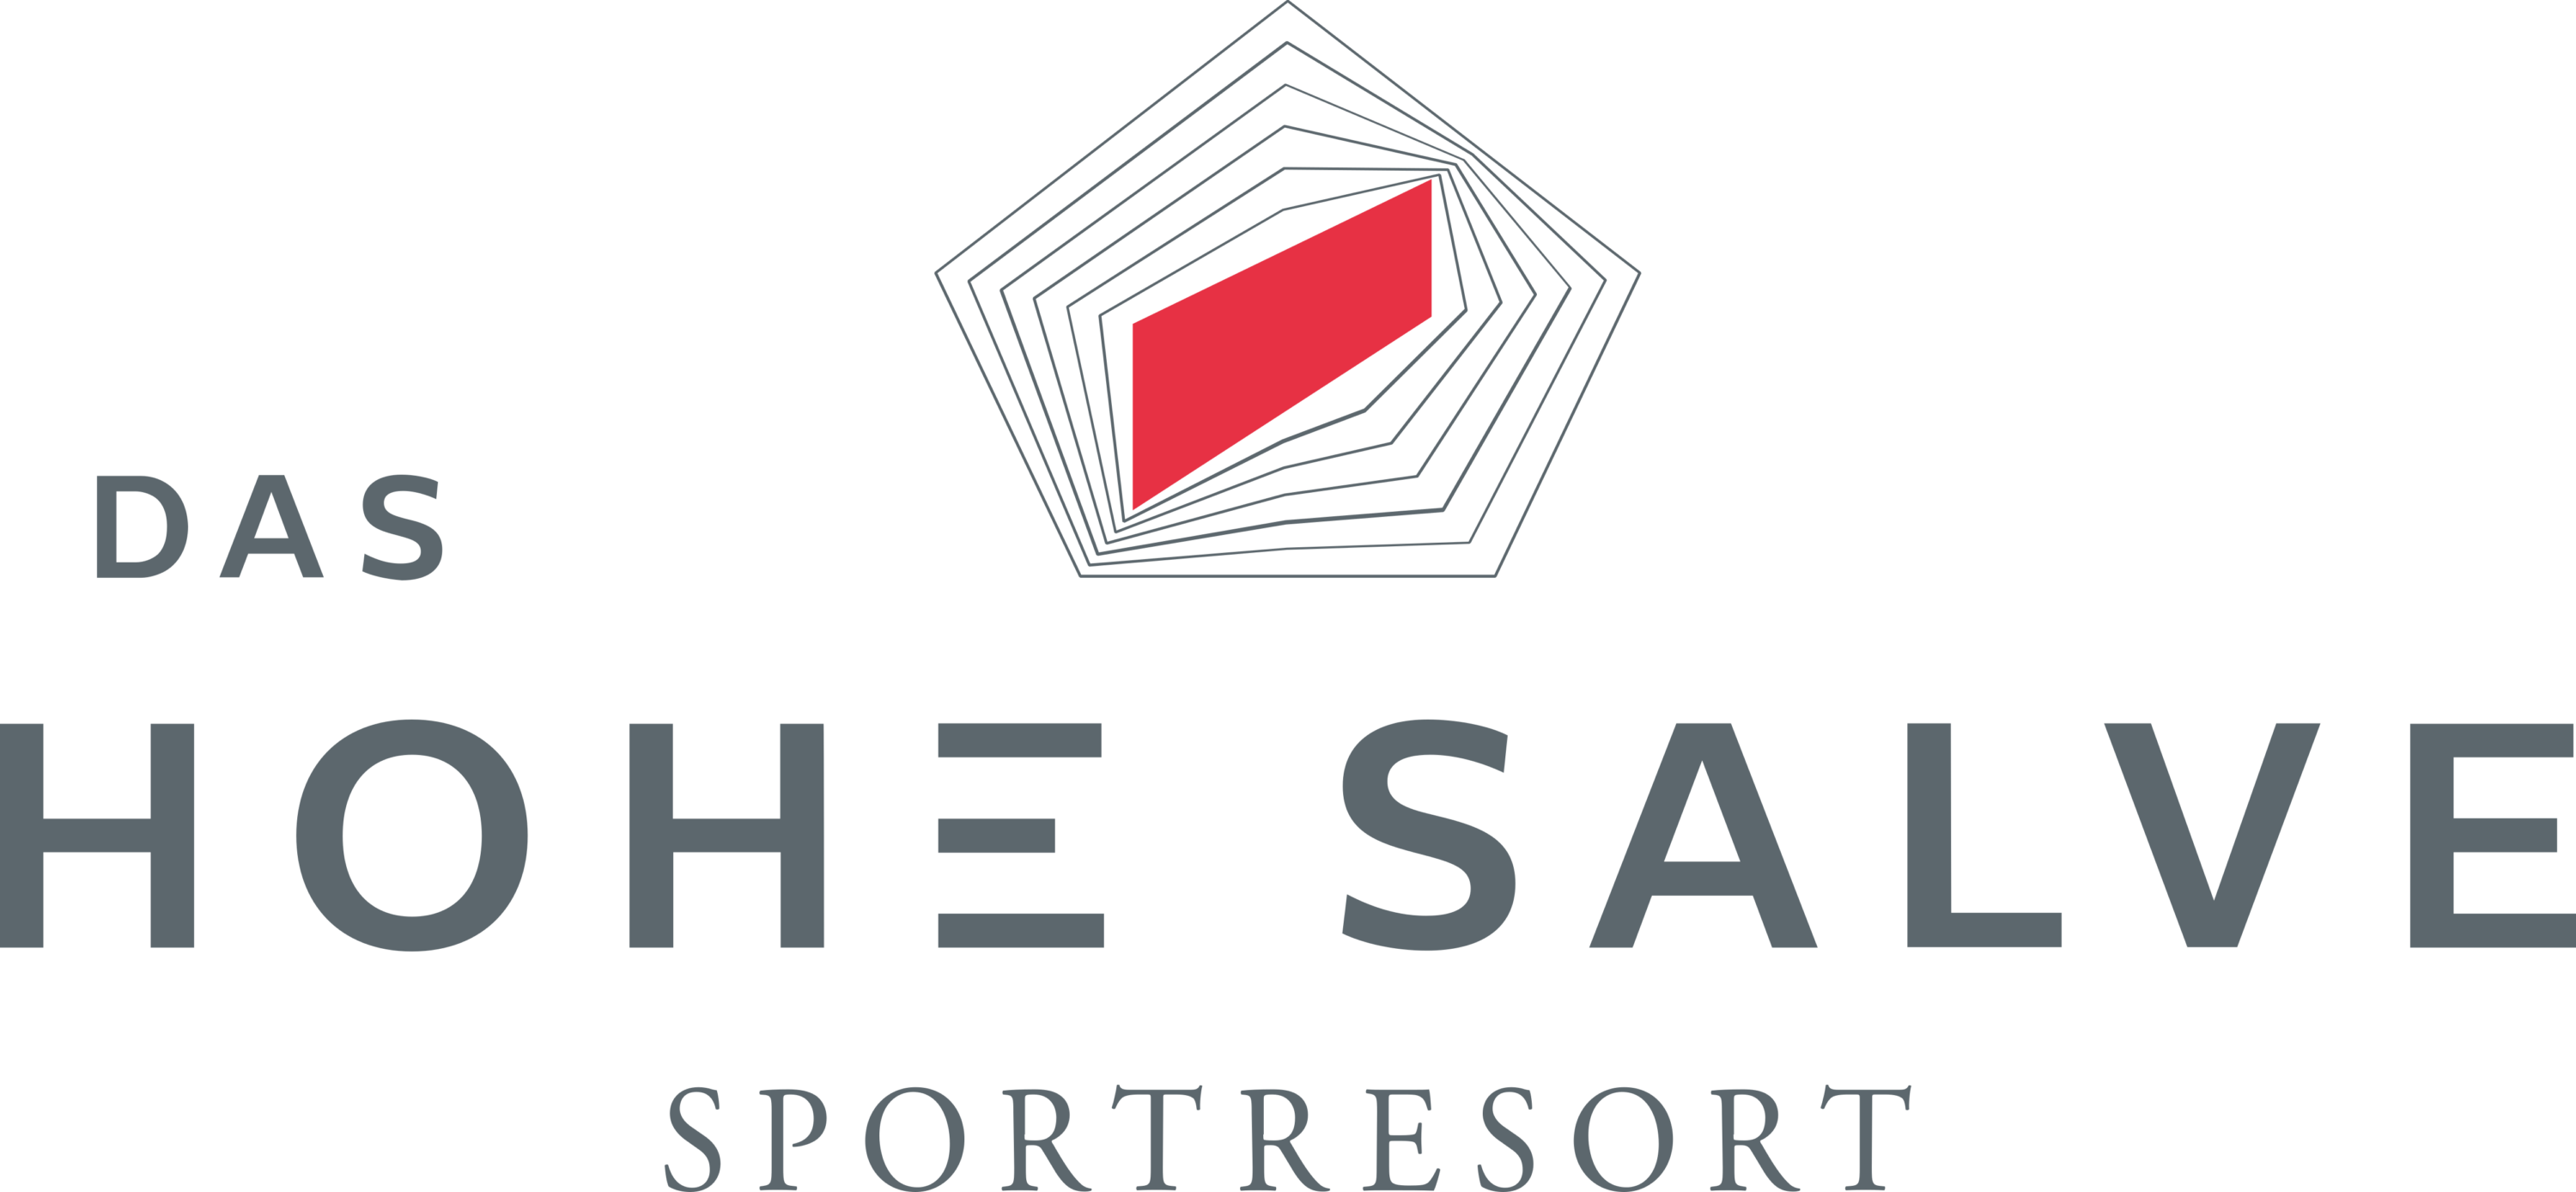 Das Hohe Salve Sportresort Logo